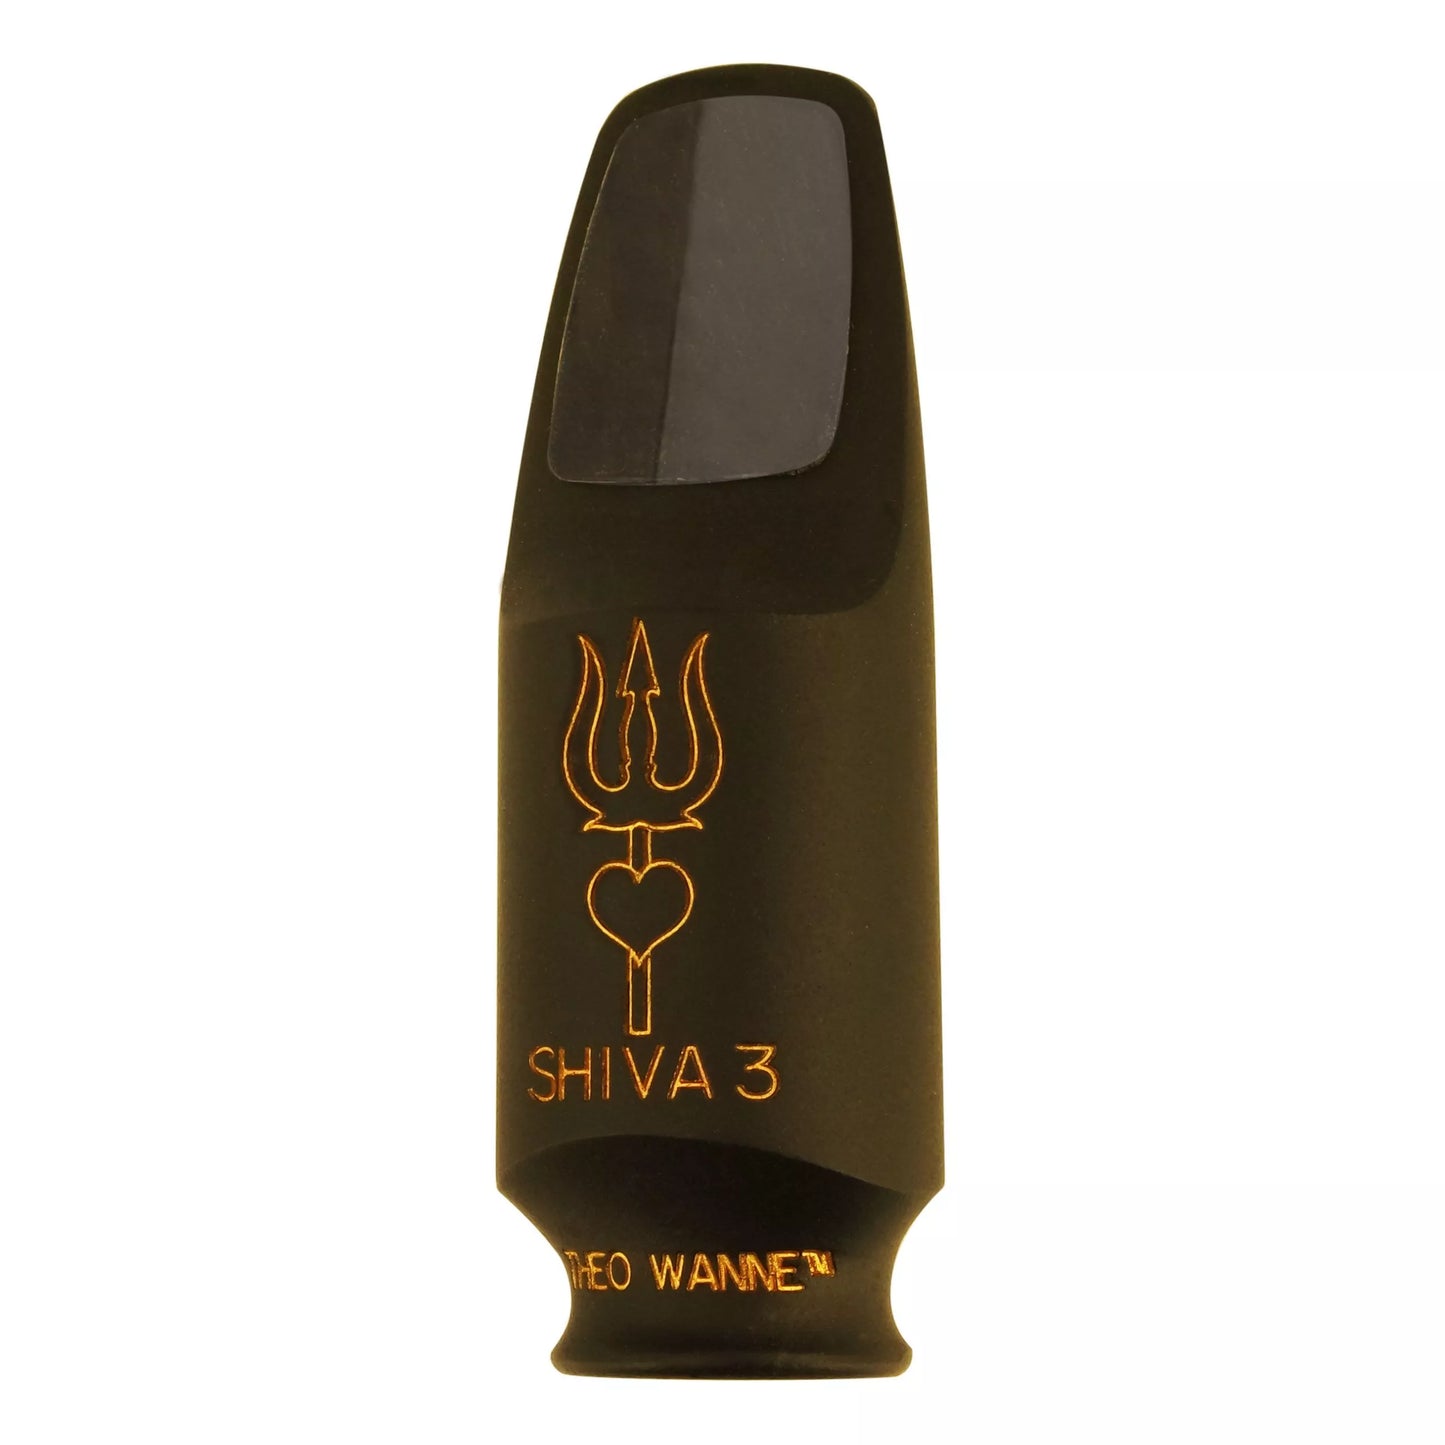 Theo Wanna Shiva 3 Mouthpiece - Soprano